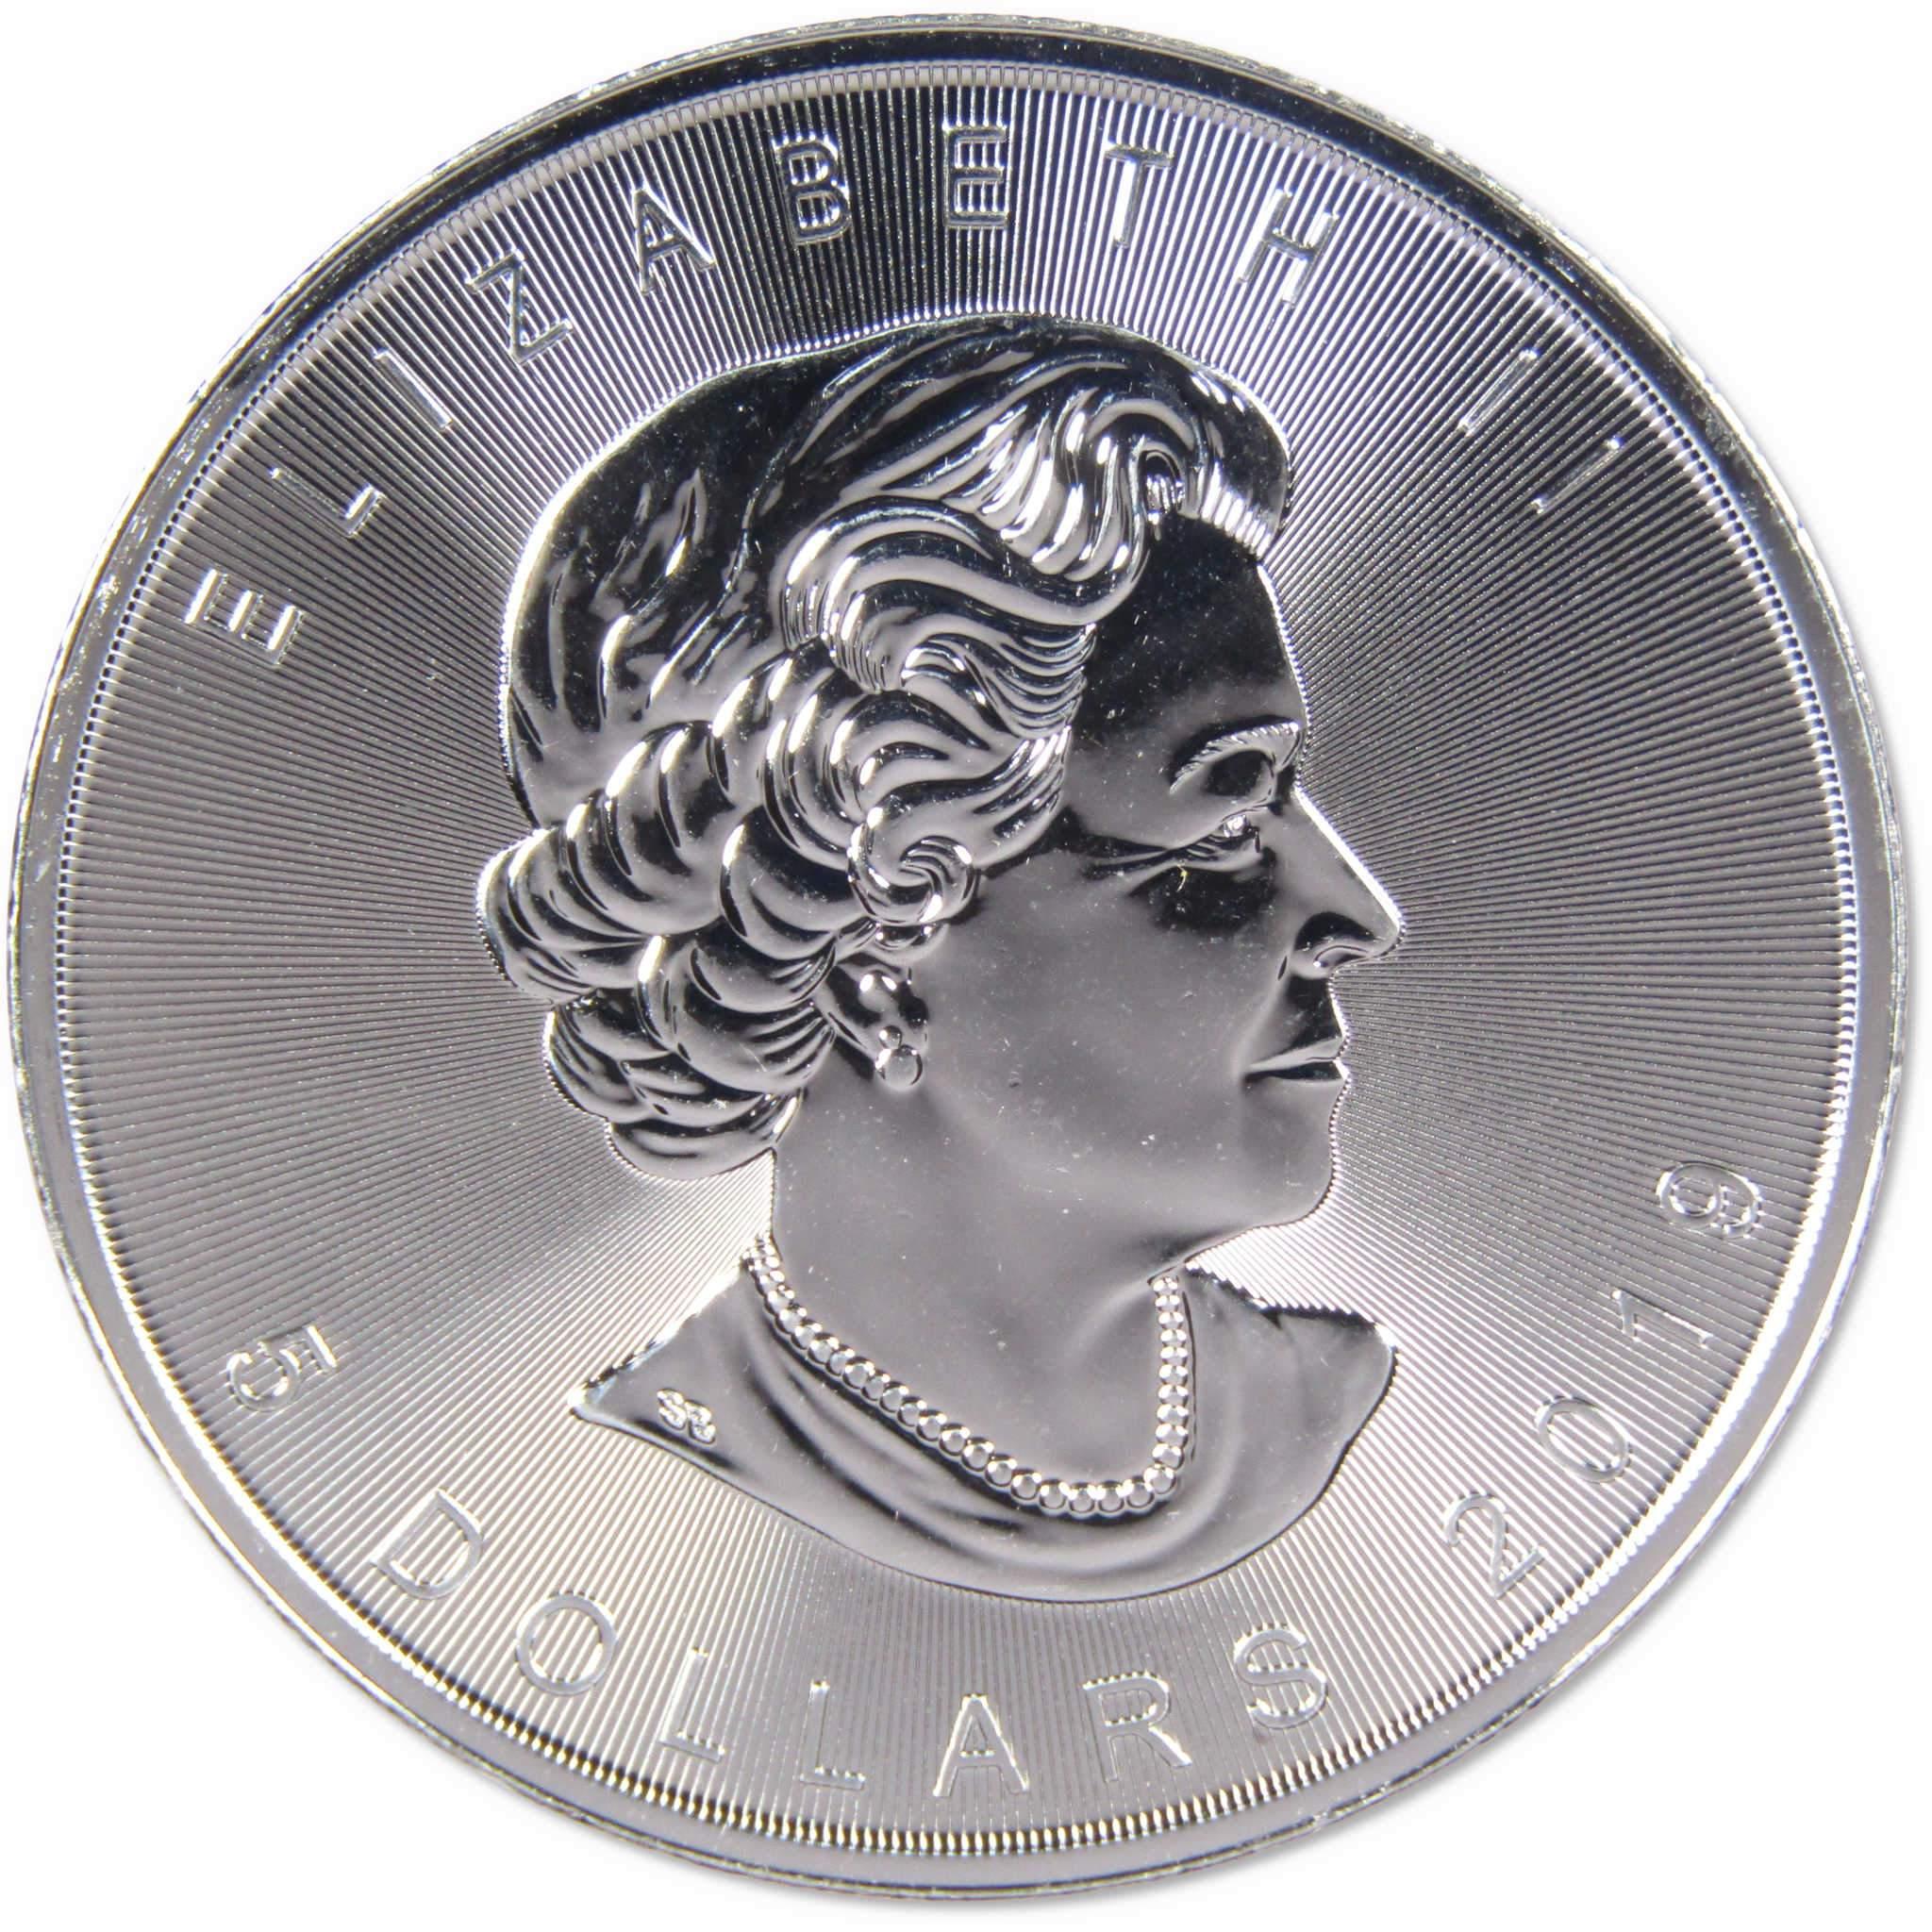 2019 Canadian Maple Leaf BU 1 oz .9999 Silver $5 Coin